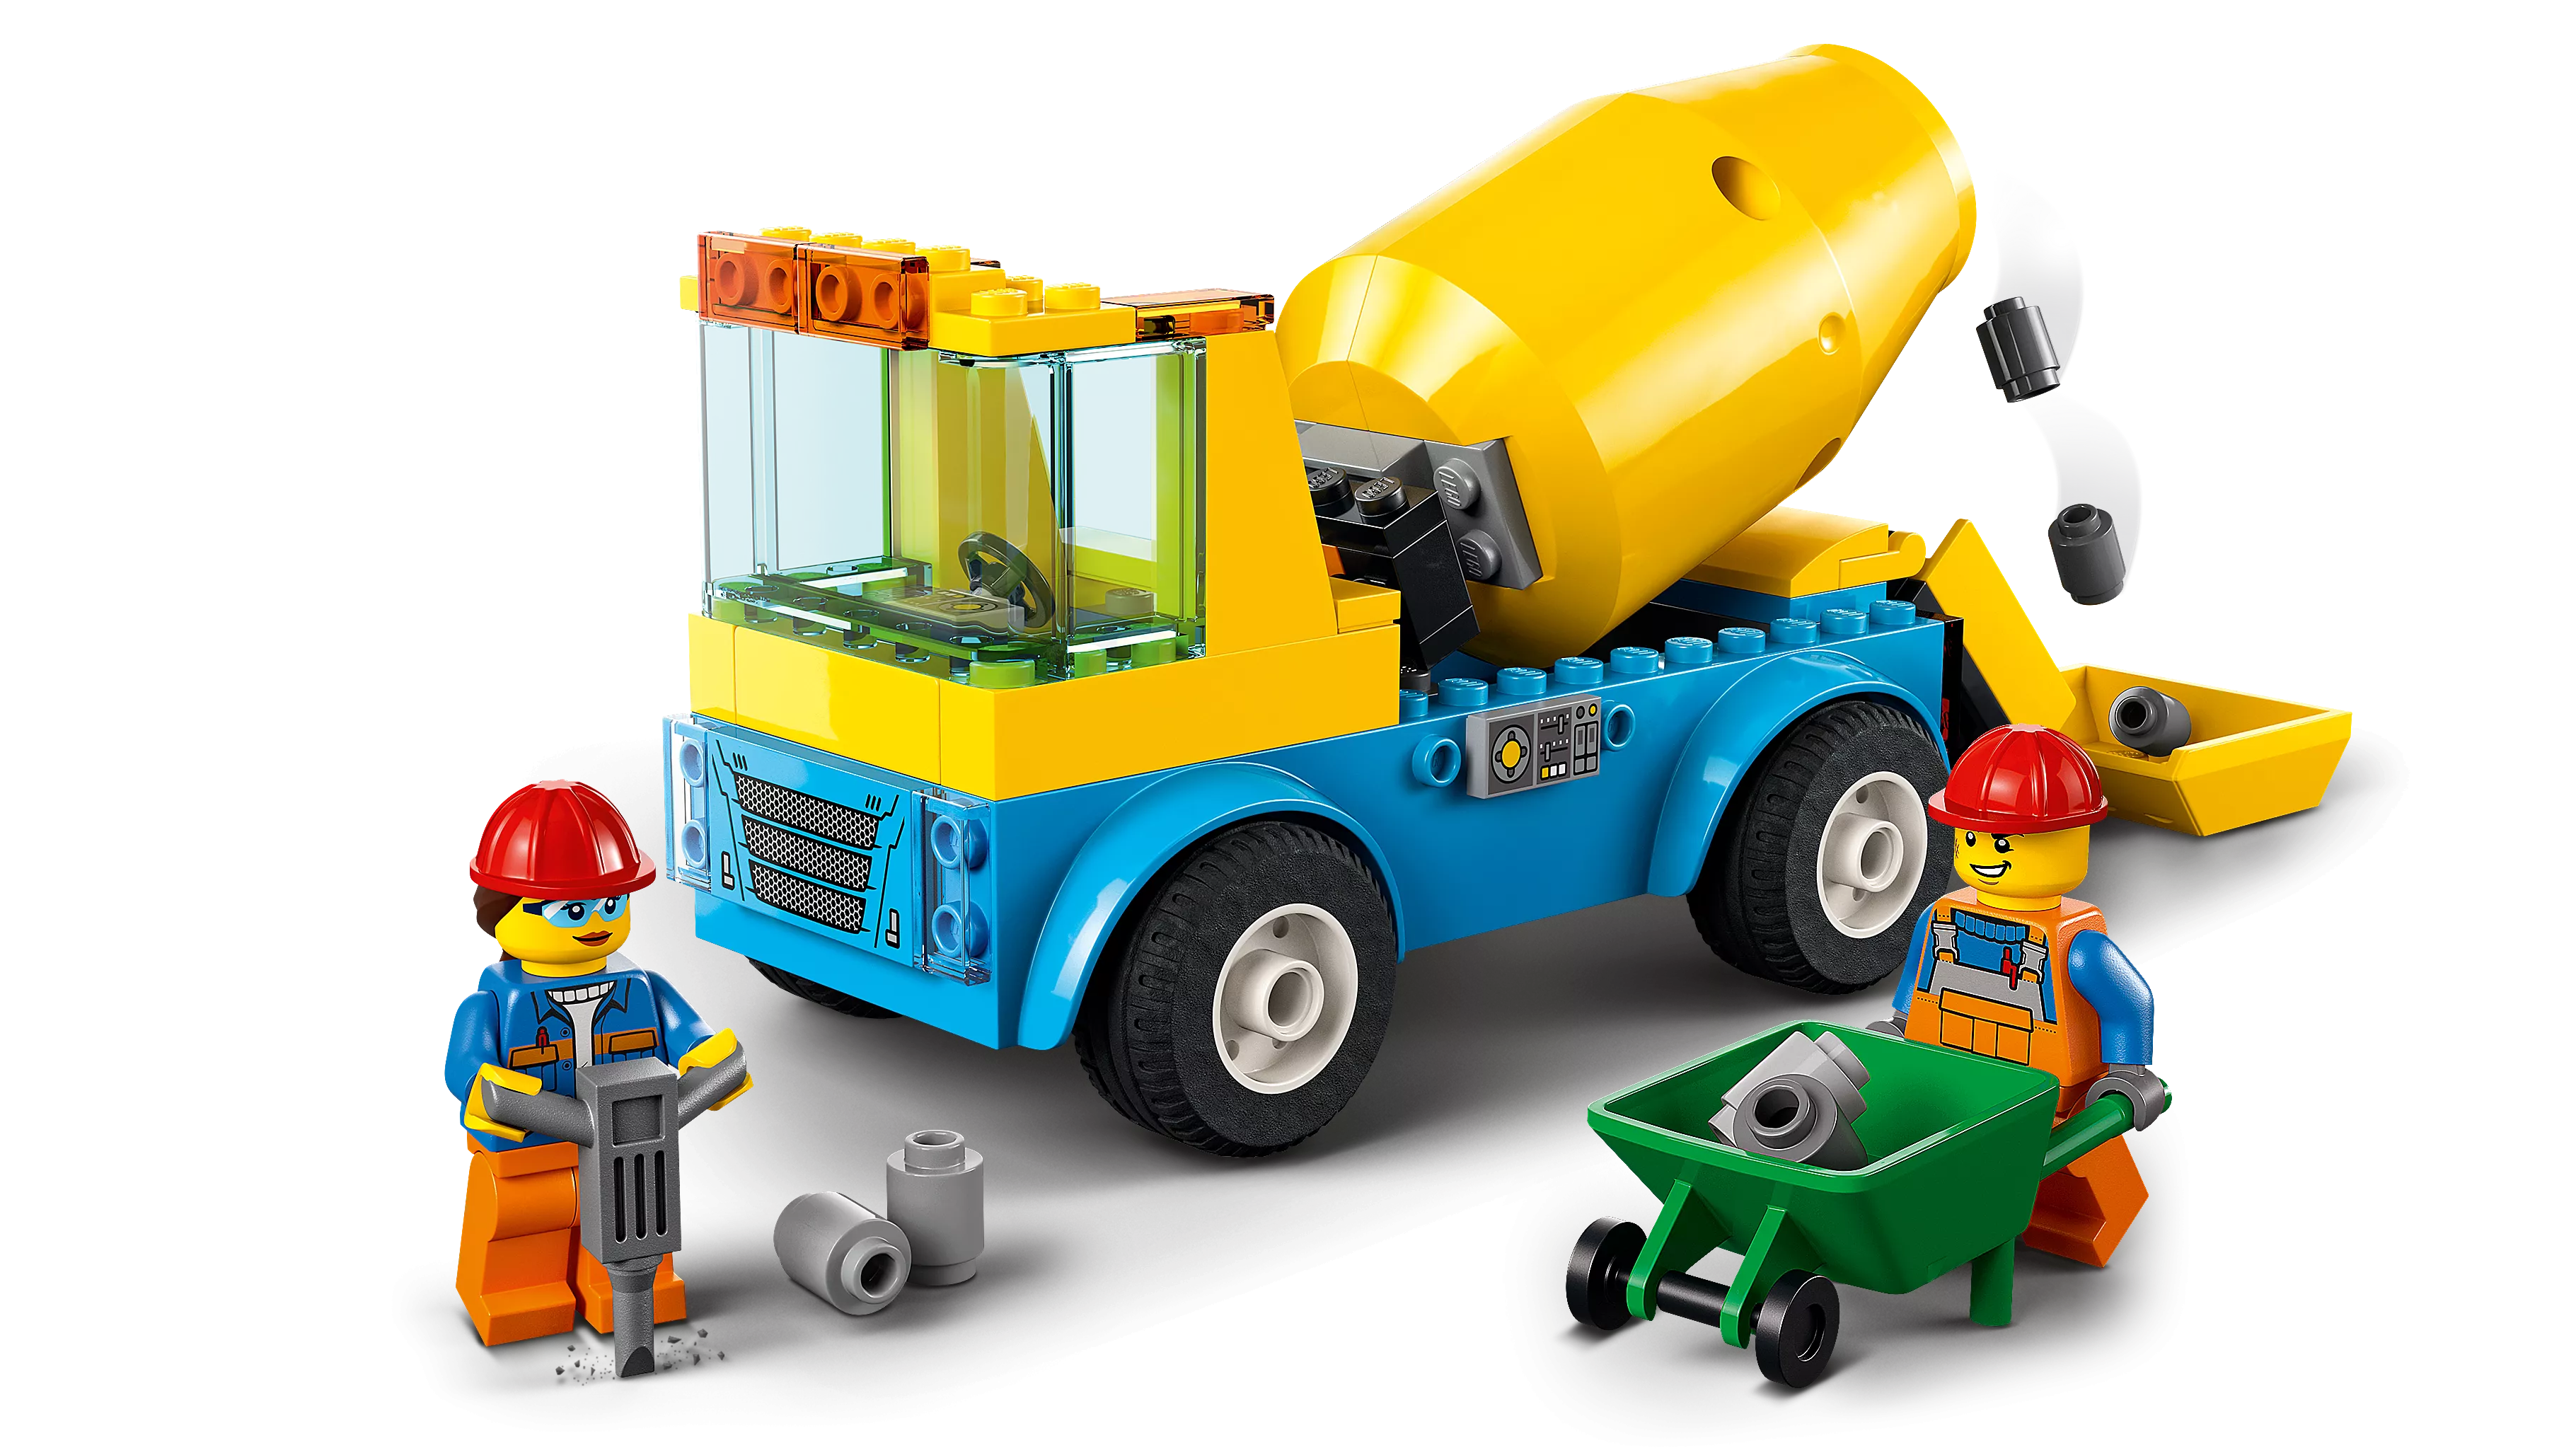 LEGO 60325 Betonmischer